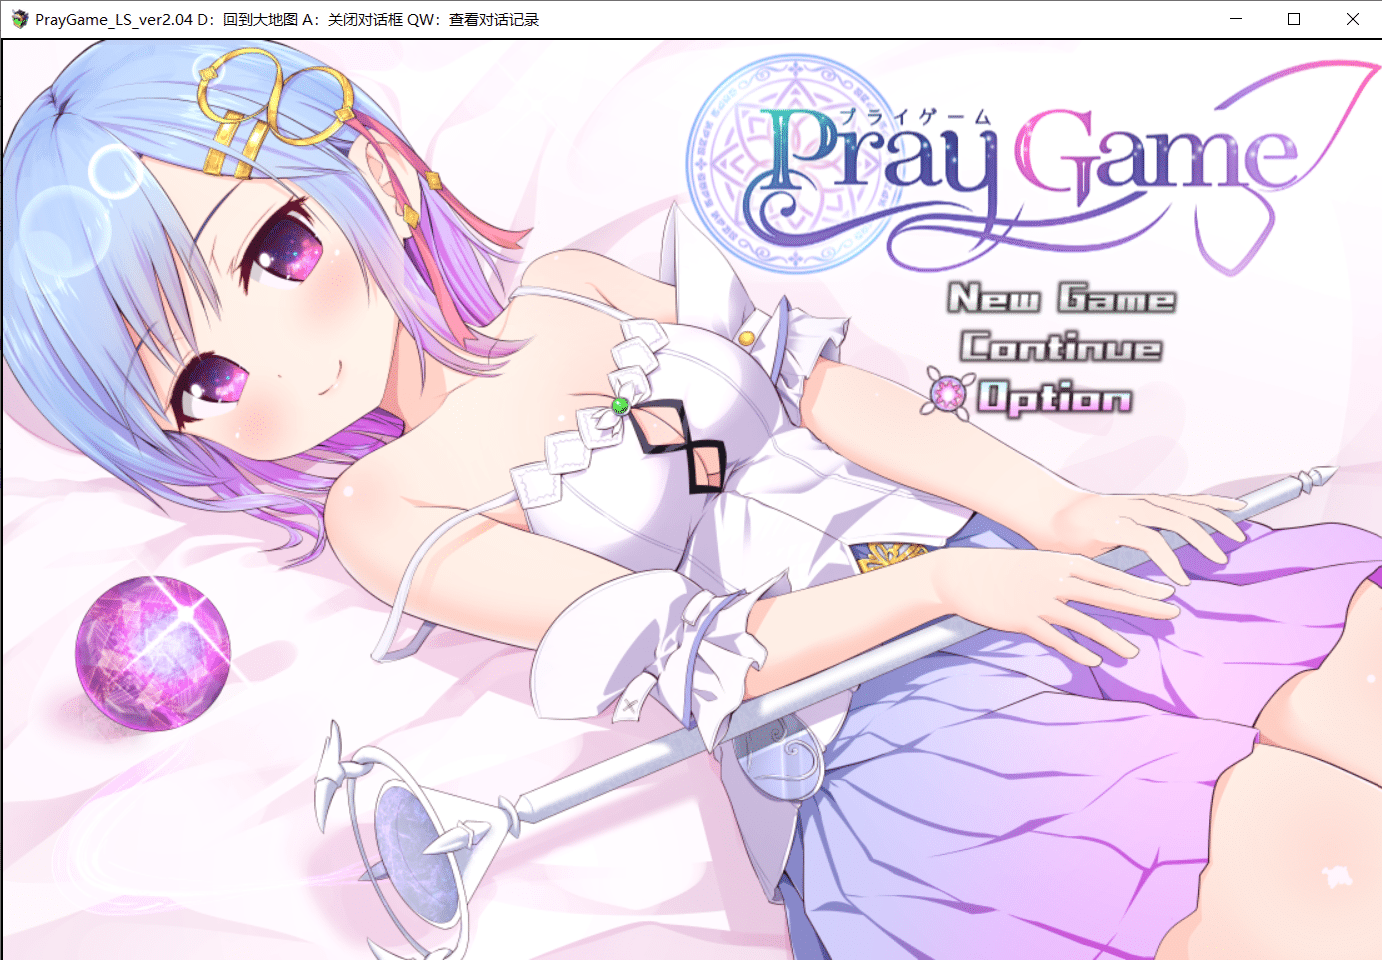 【爆款RPG/汉化】祈祷游戏 PrayGame：Append+LastStory 完全汉化版+存档【新汉化/PC/3G】-小皮ACG-二次元资源分享